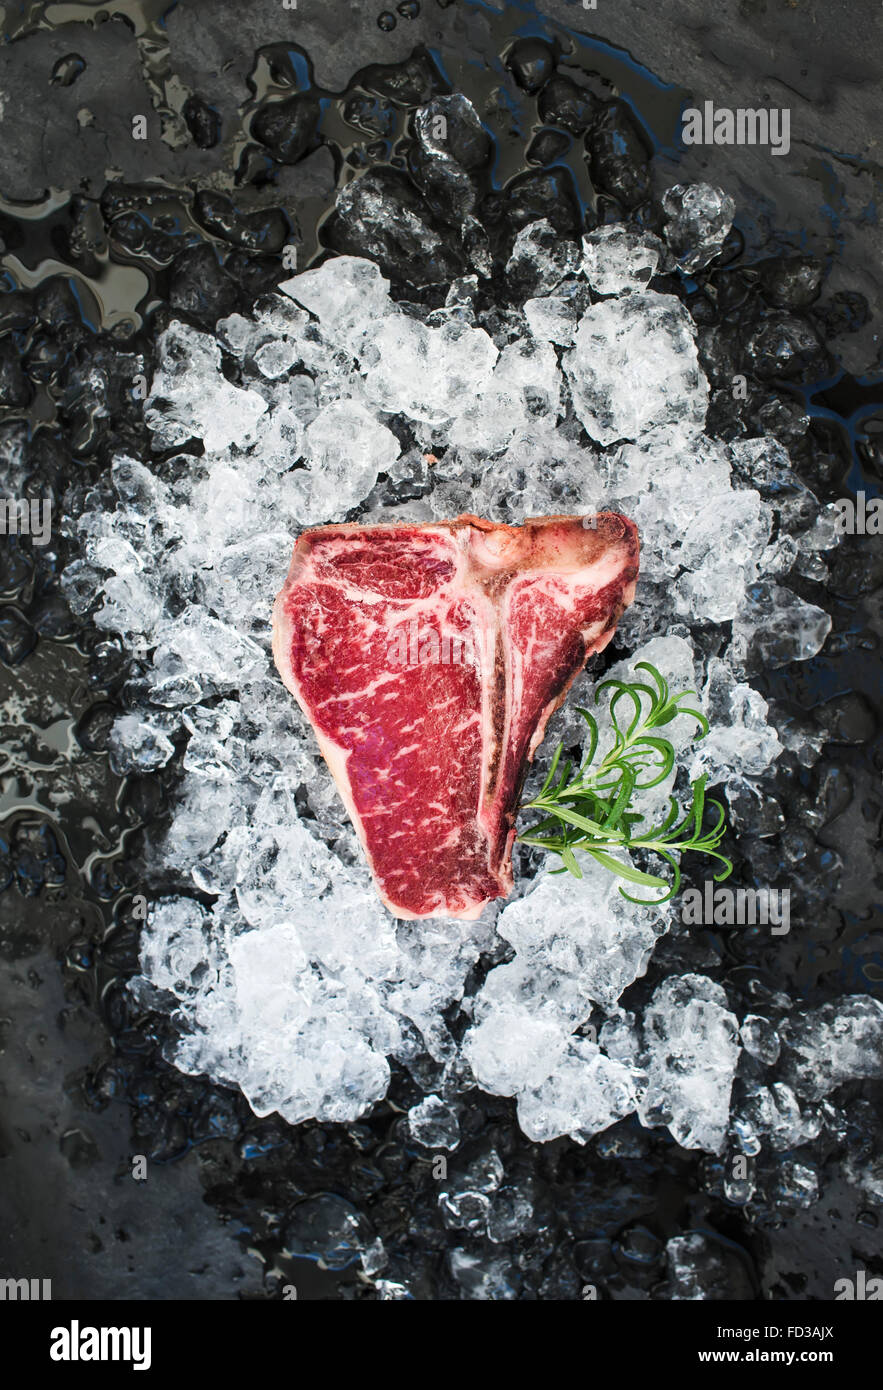 TBone steak on ice. Stock Photo